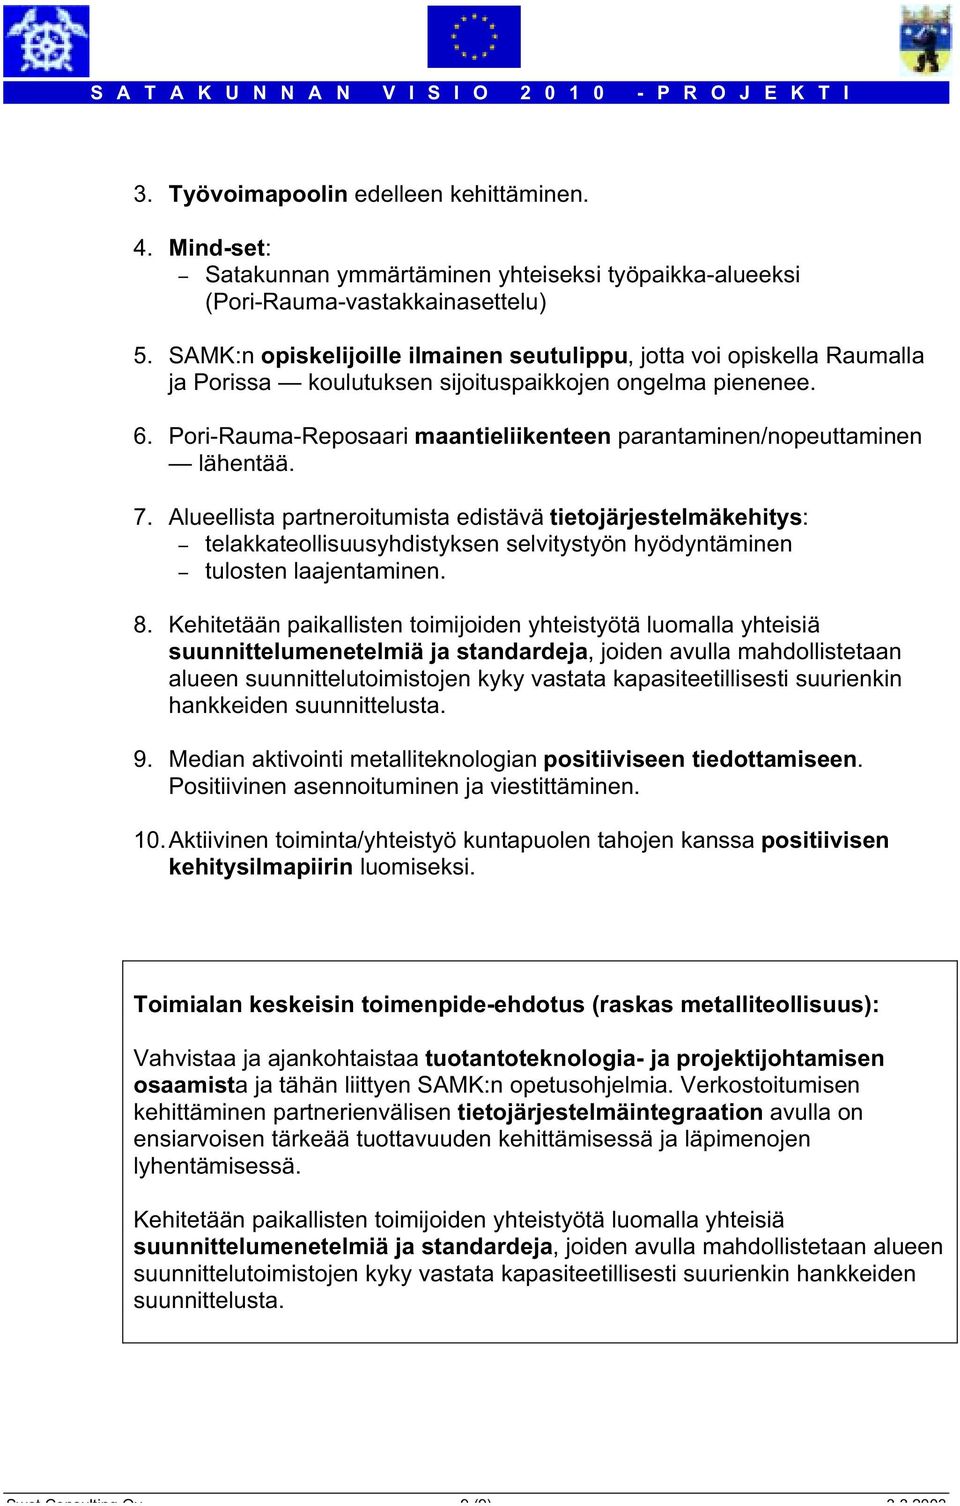 Pori-Rauma-Reposaari maantieliikenteen parantaminen/nopeuttaminen lähentää. 7.